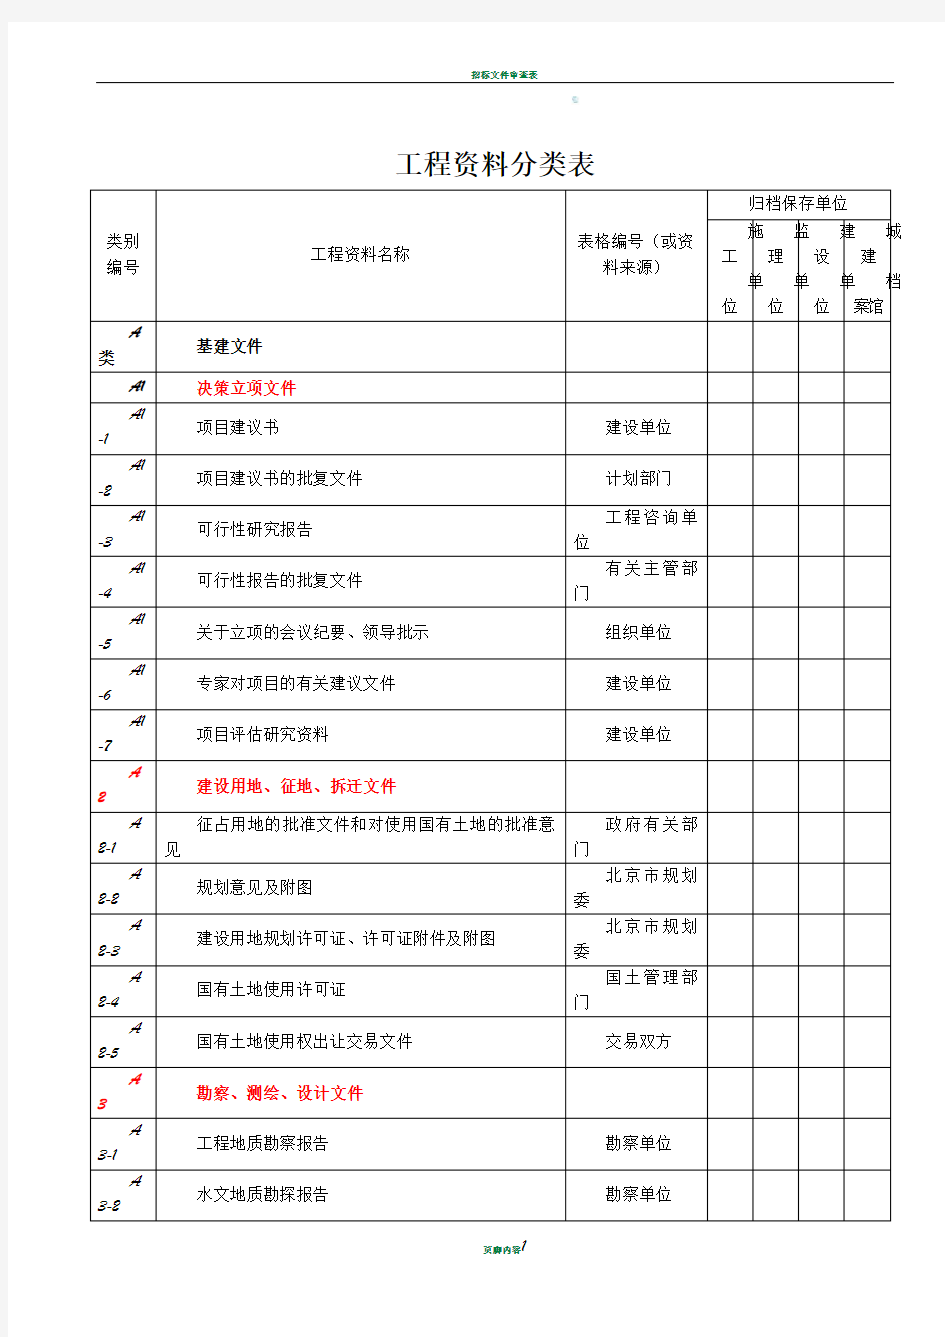 工程资料分类表-(甲方)